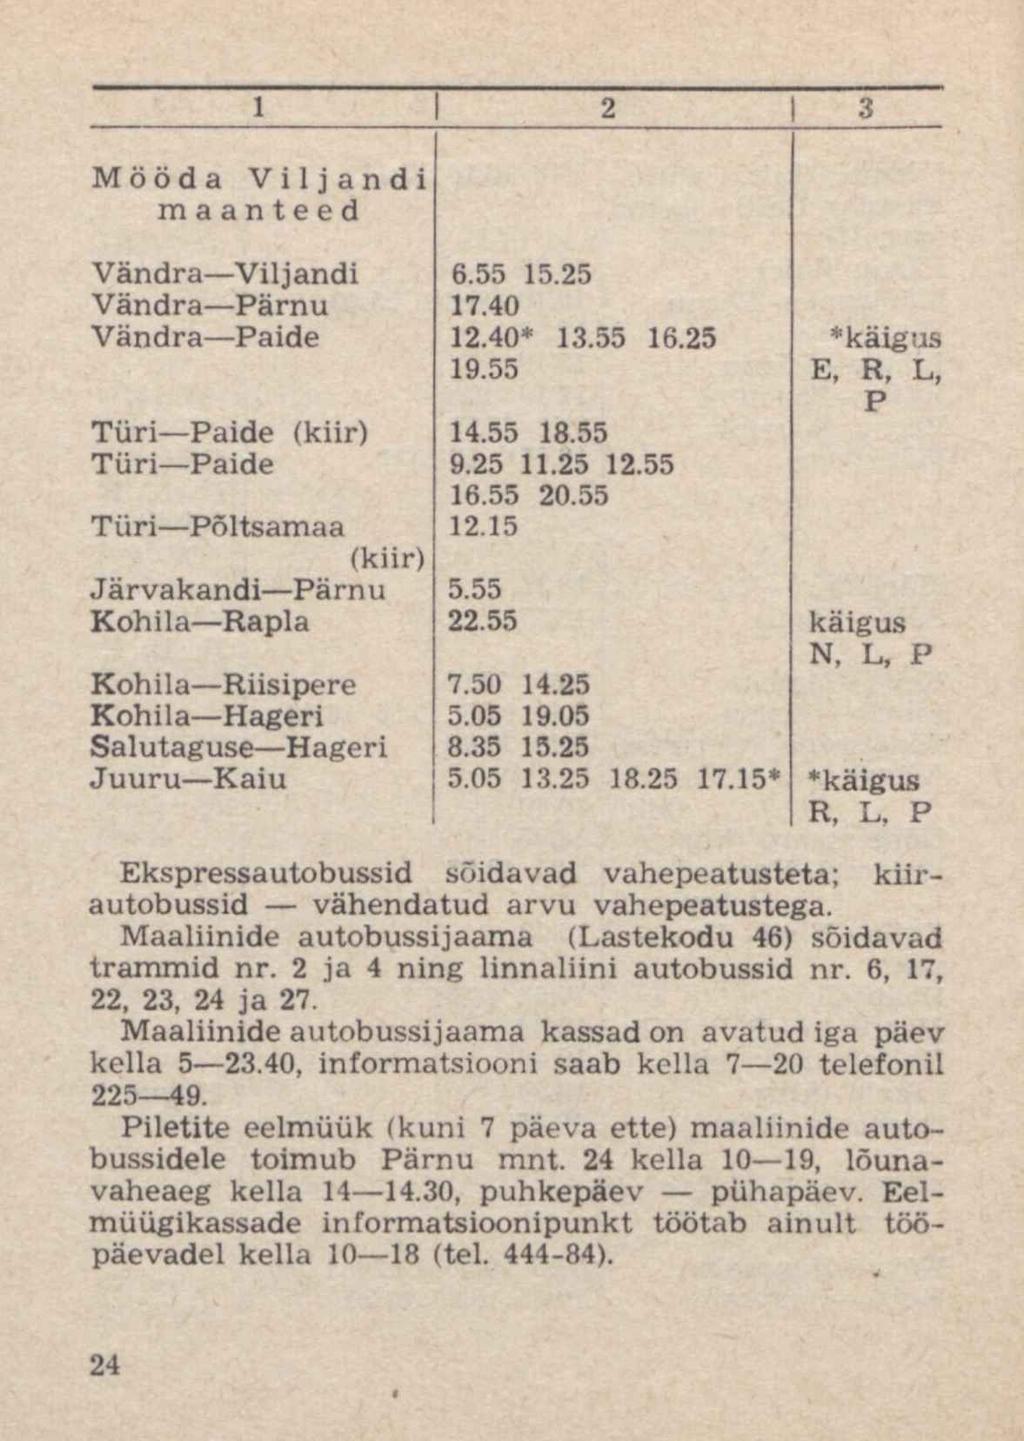 1 2 3 Mööda Viljandi maanteed Vändra Viljandi 6.55 15.25 Vändra Pärnu 17.40 Vändra Paide 12.40* 13.55 16.25 * käigus 19.55 E, R, L, P Türi Paide (kiir) 14.55 18.55 Türi Paide 9.25 11.25 12.55 16.55 20.